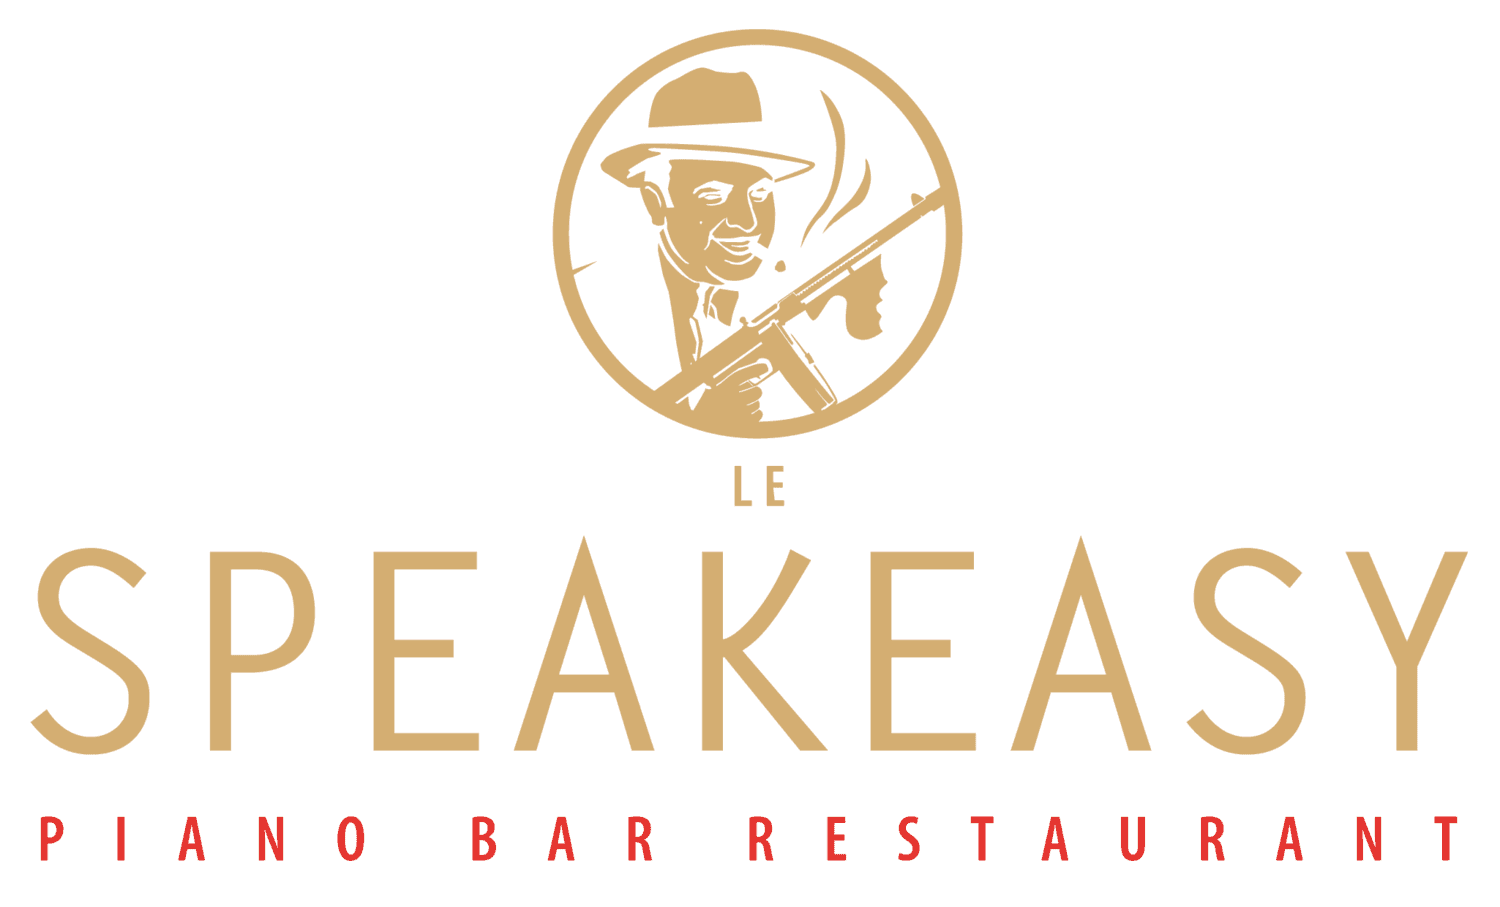 Le Speakeasy Festive Restaurant & Piano Club, Paris & Cannes